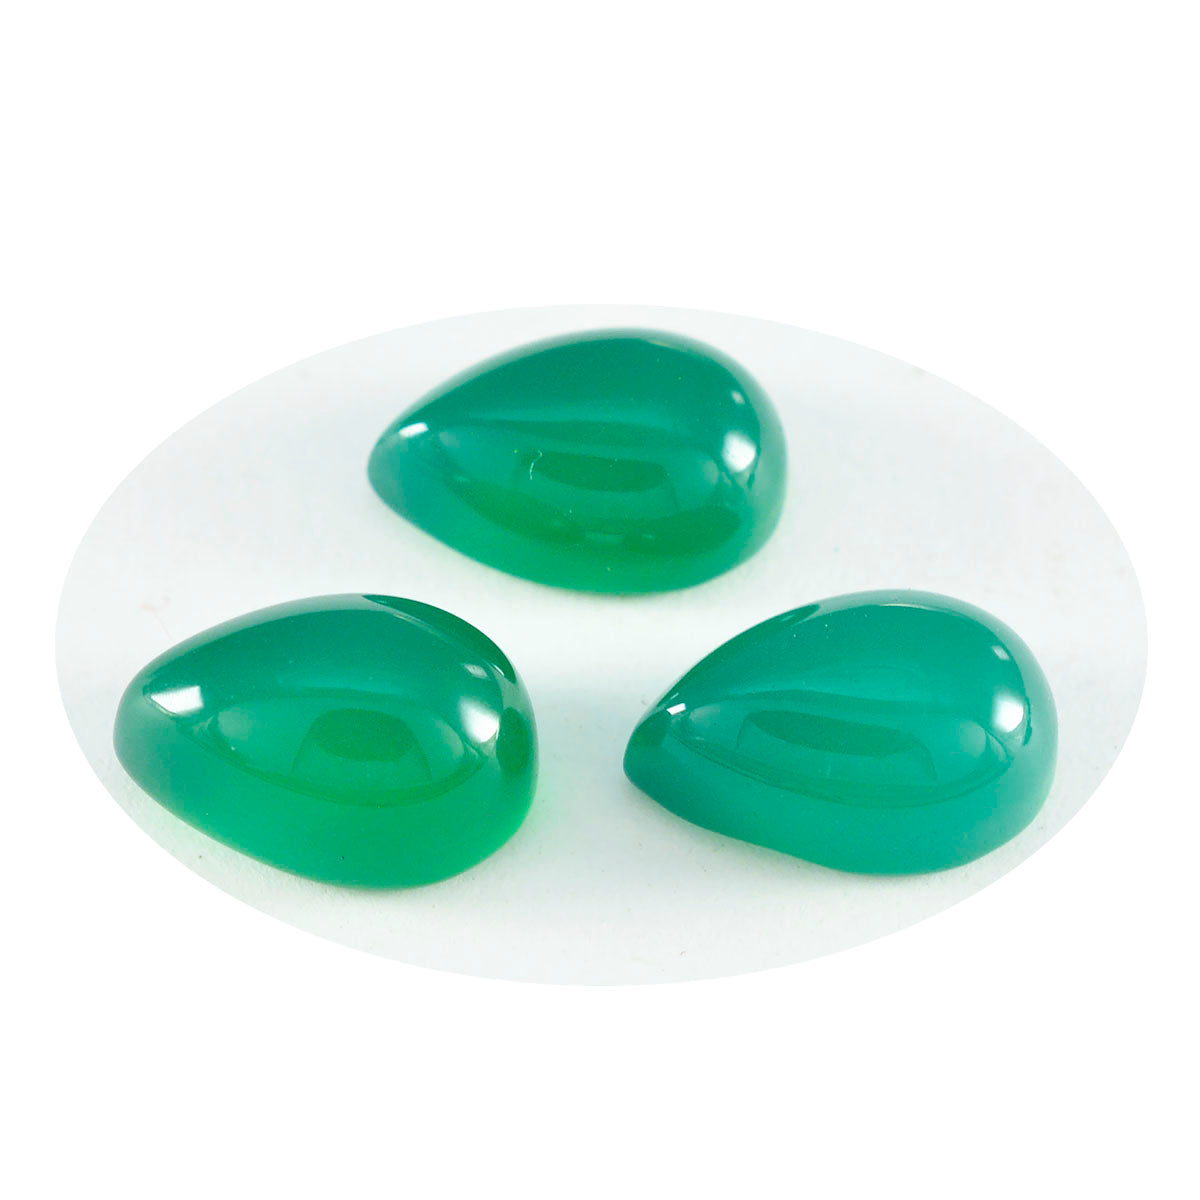 Riyogems 1PC Green Onyx Cabochon 7x10 mm Pear Shape lovely Quality Gemstone